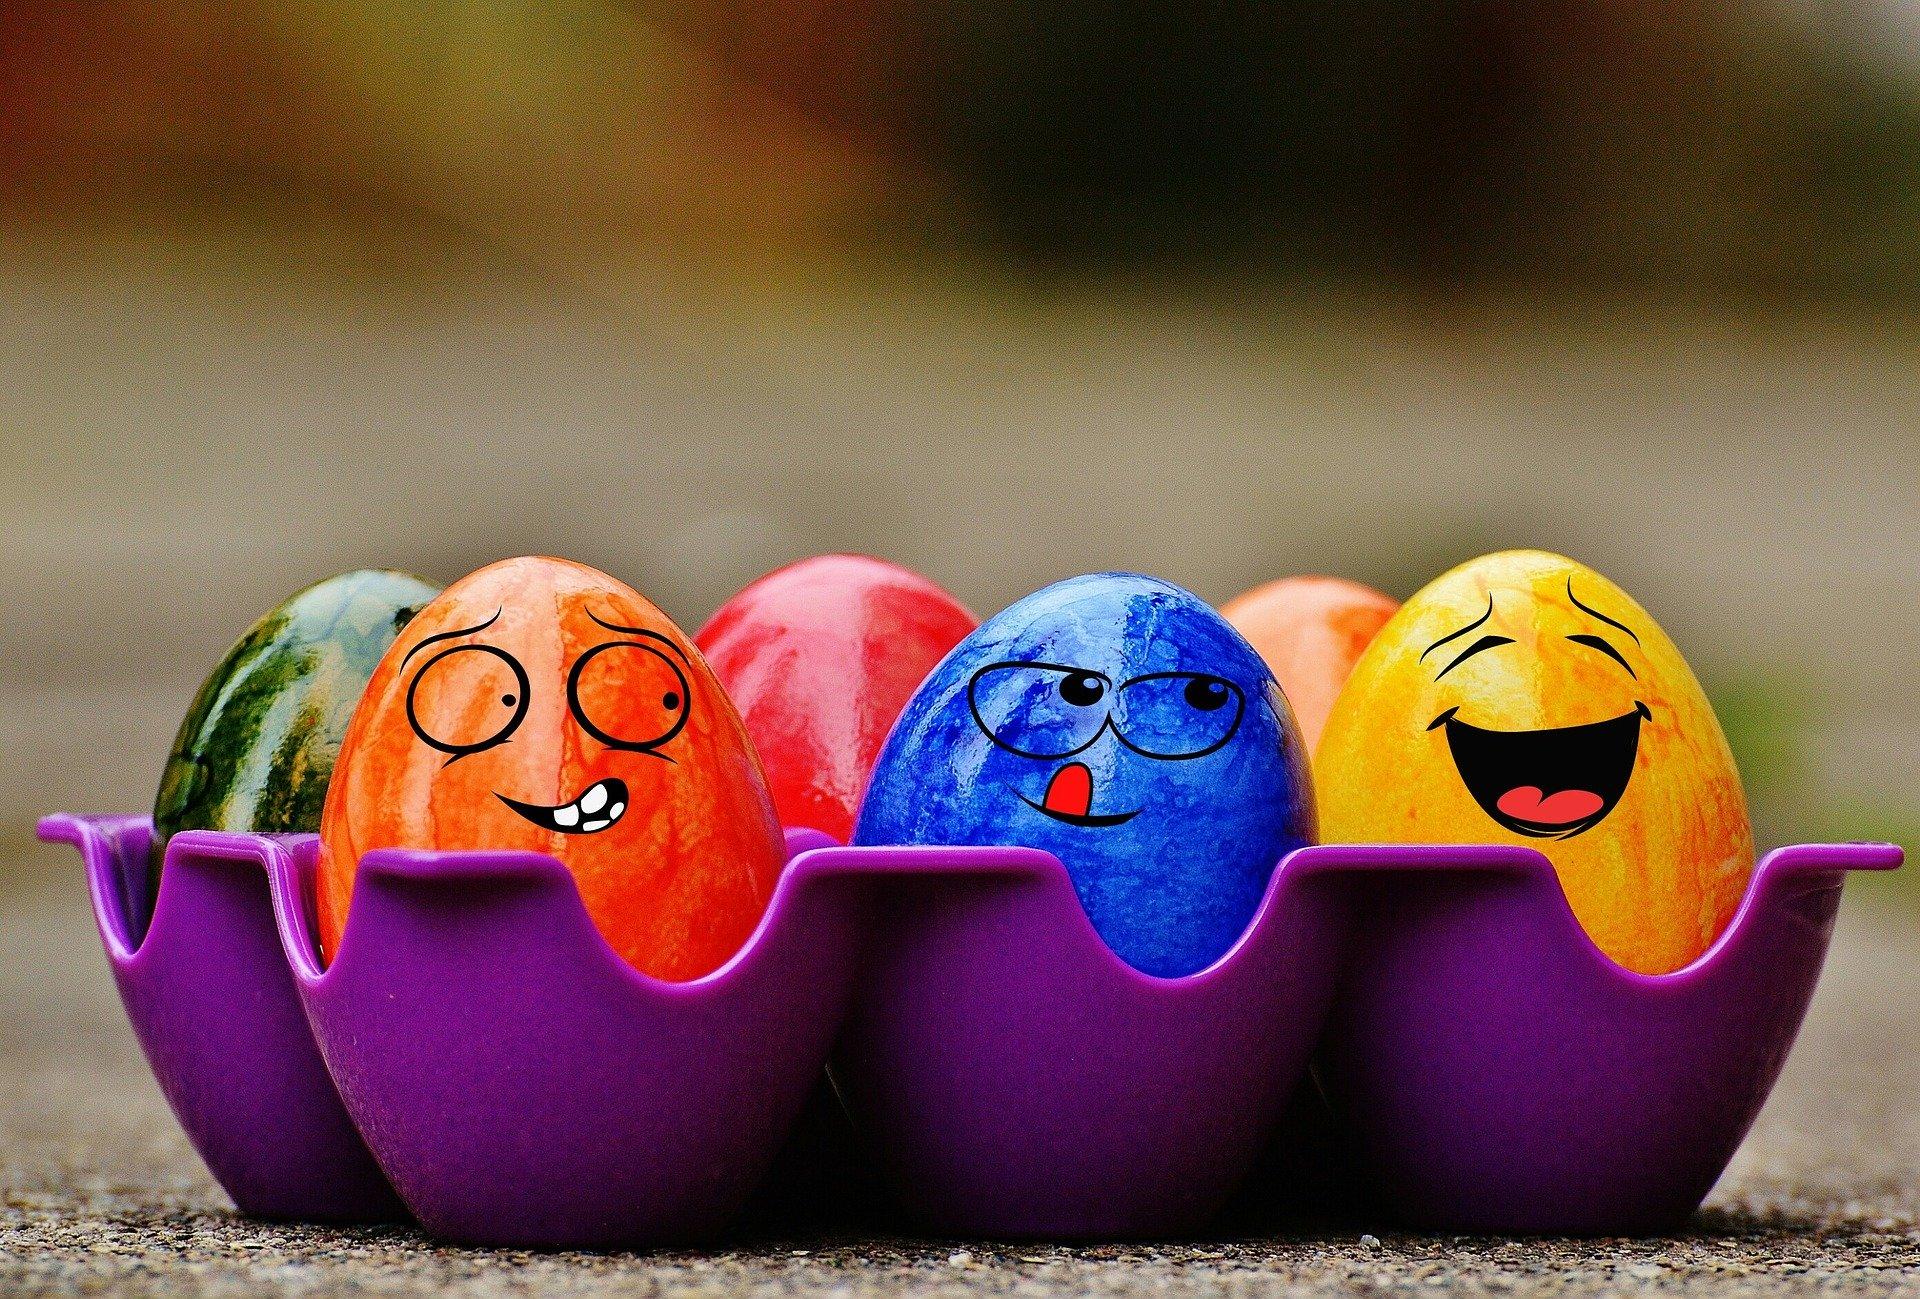 Los huevos de Pascua son un producto típico de Semana Santa. Te proponemos ideas y manualidades para hacer con niños